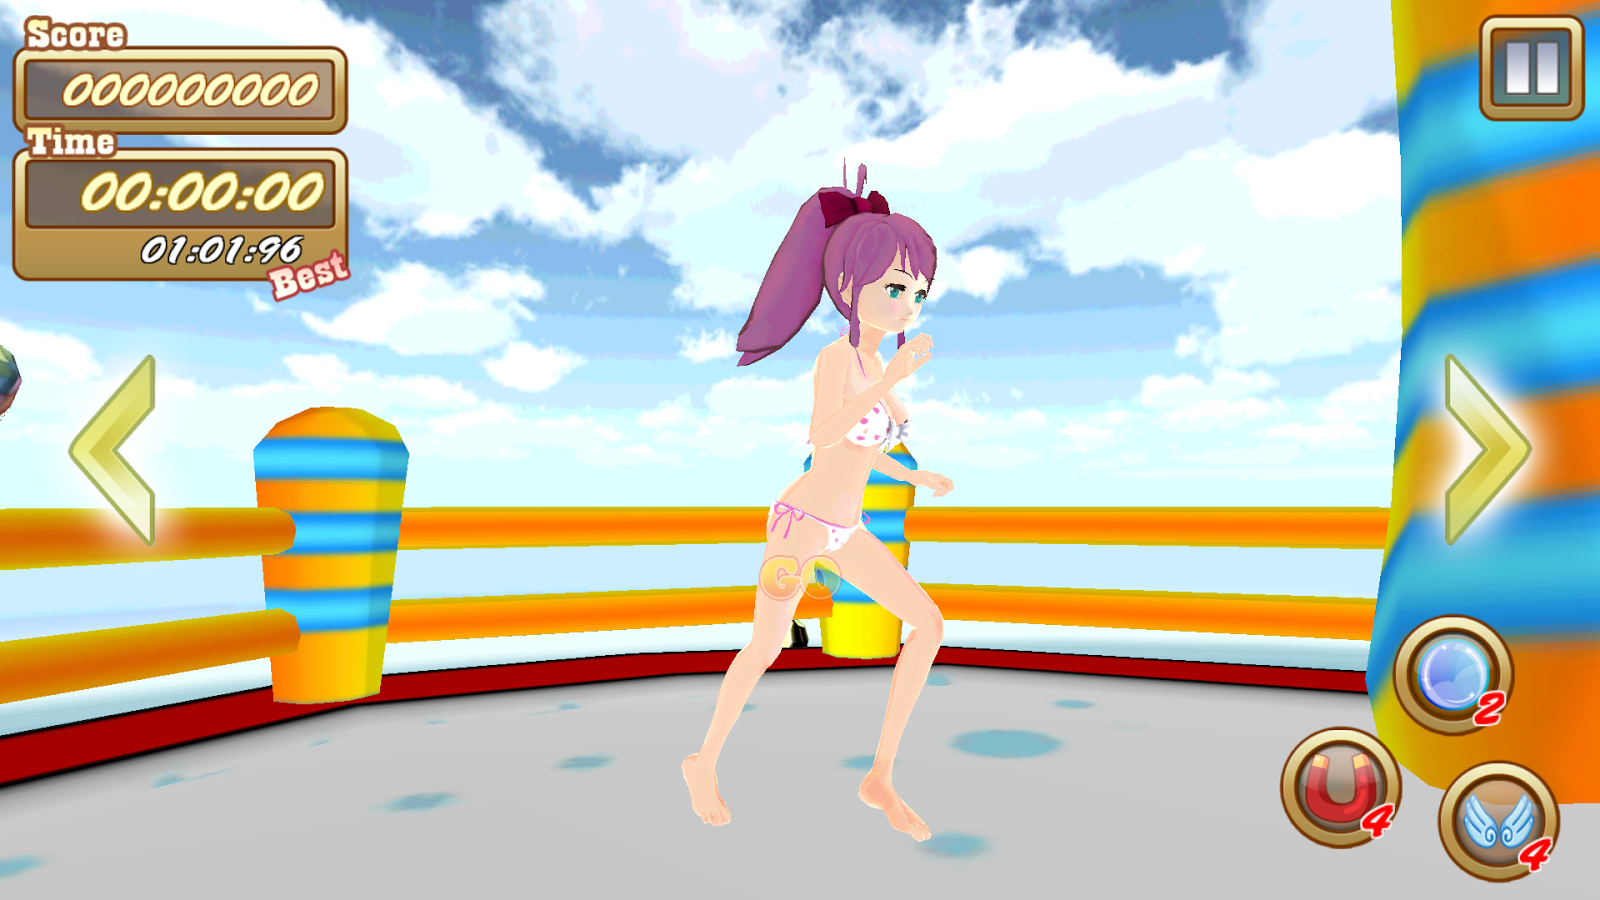 [Juego] Bikini Girl v1.0.0 Apk Mod (Ilimitado Gold) GBQIVlx1P9cxjpLdLBjwNyZDQy4IsheMWgi37Q0nbDw5i-6sRs0ws0eEX2WthCyKoA=h900-rw